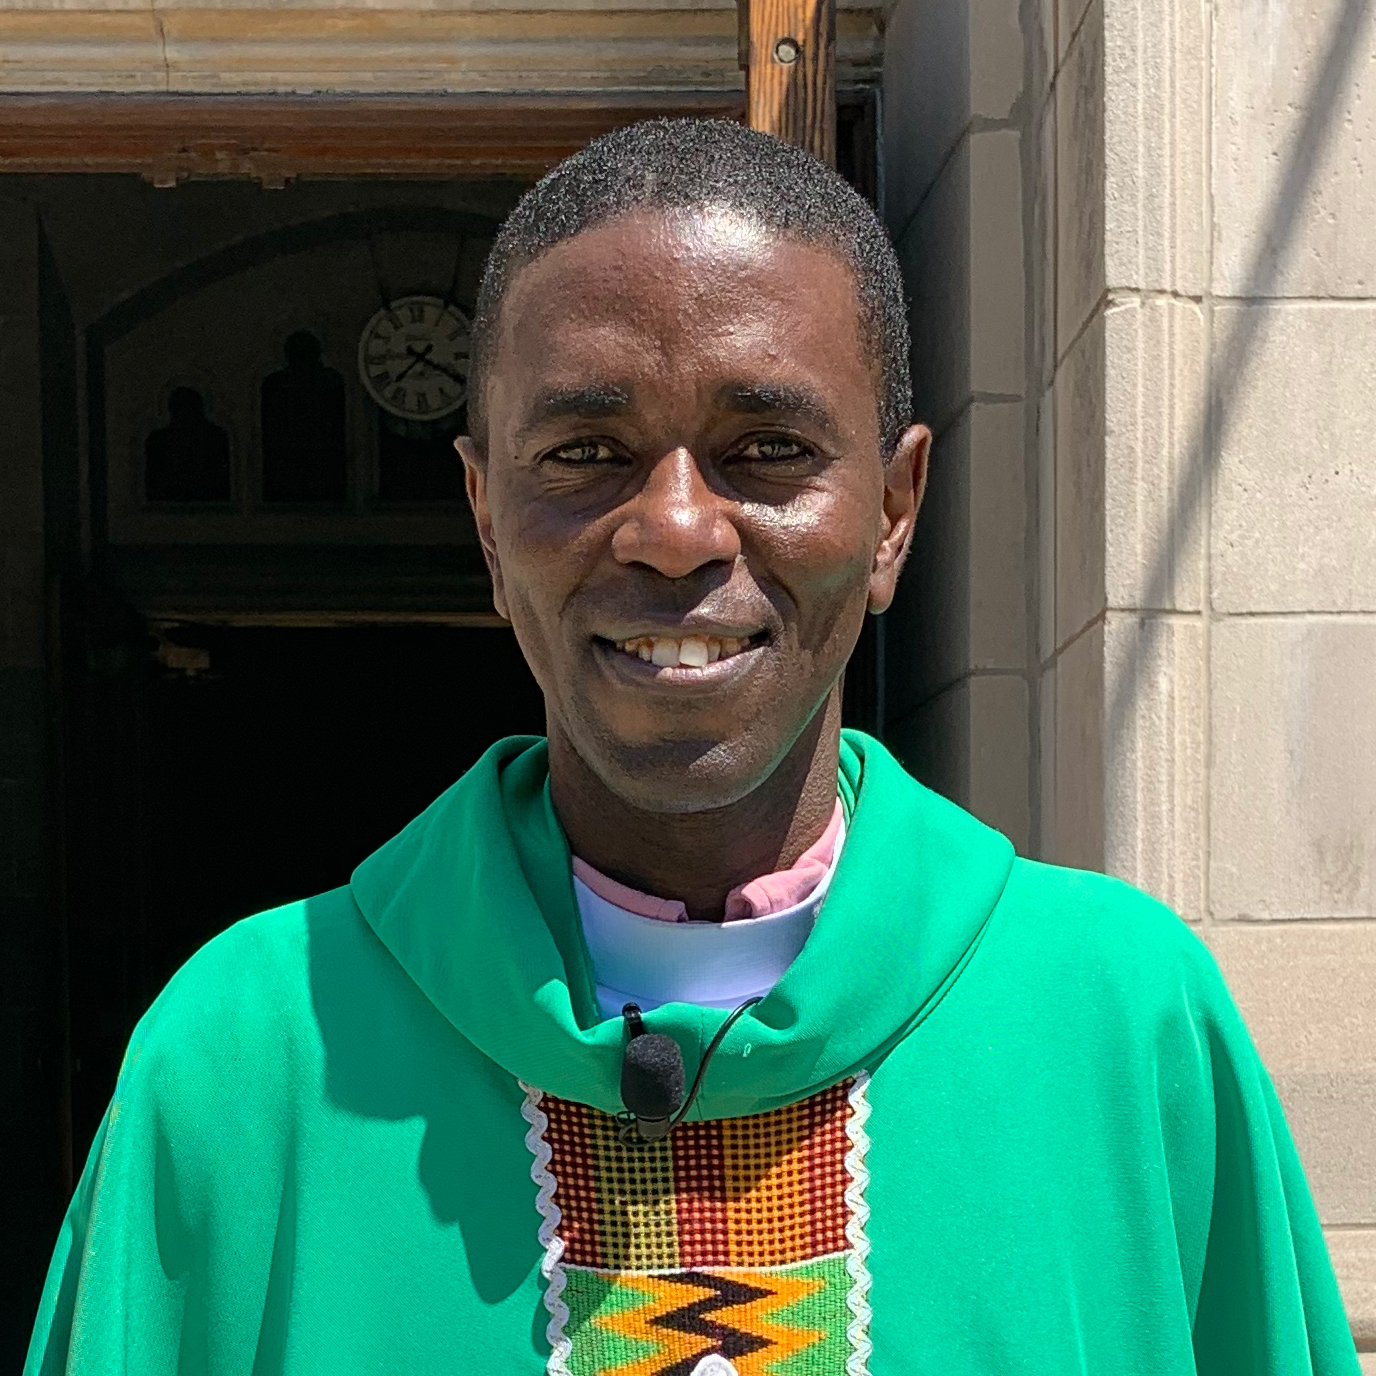 Fr. Thadeo Mgimba